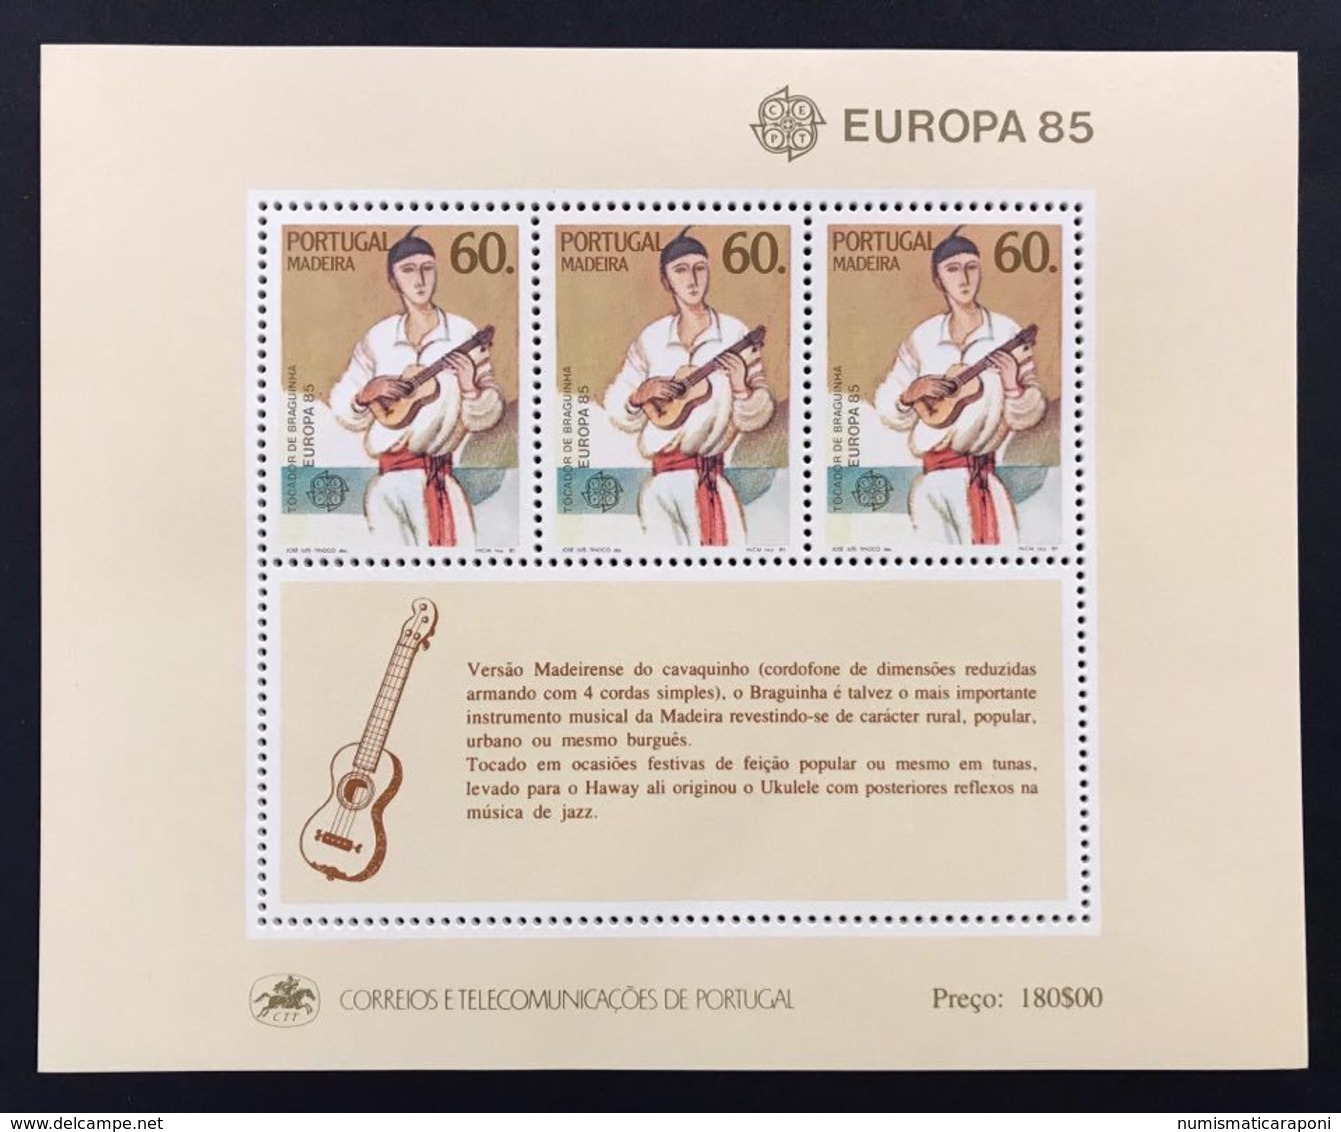 Portogallo Madeira 1985  Europa Cept 1985 Foglietti Set - Local Post Stamps